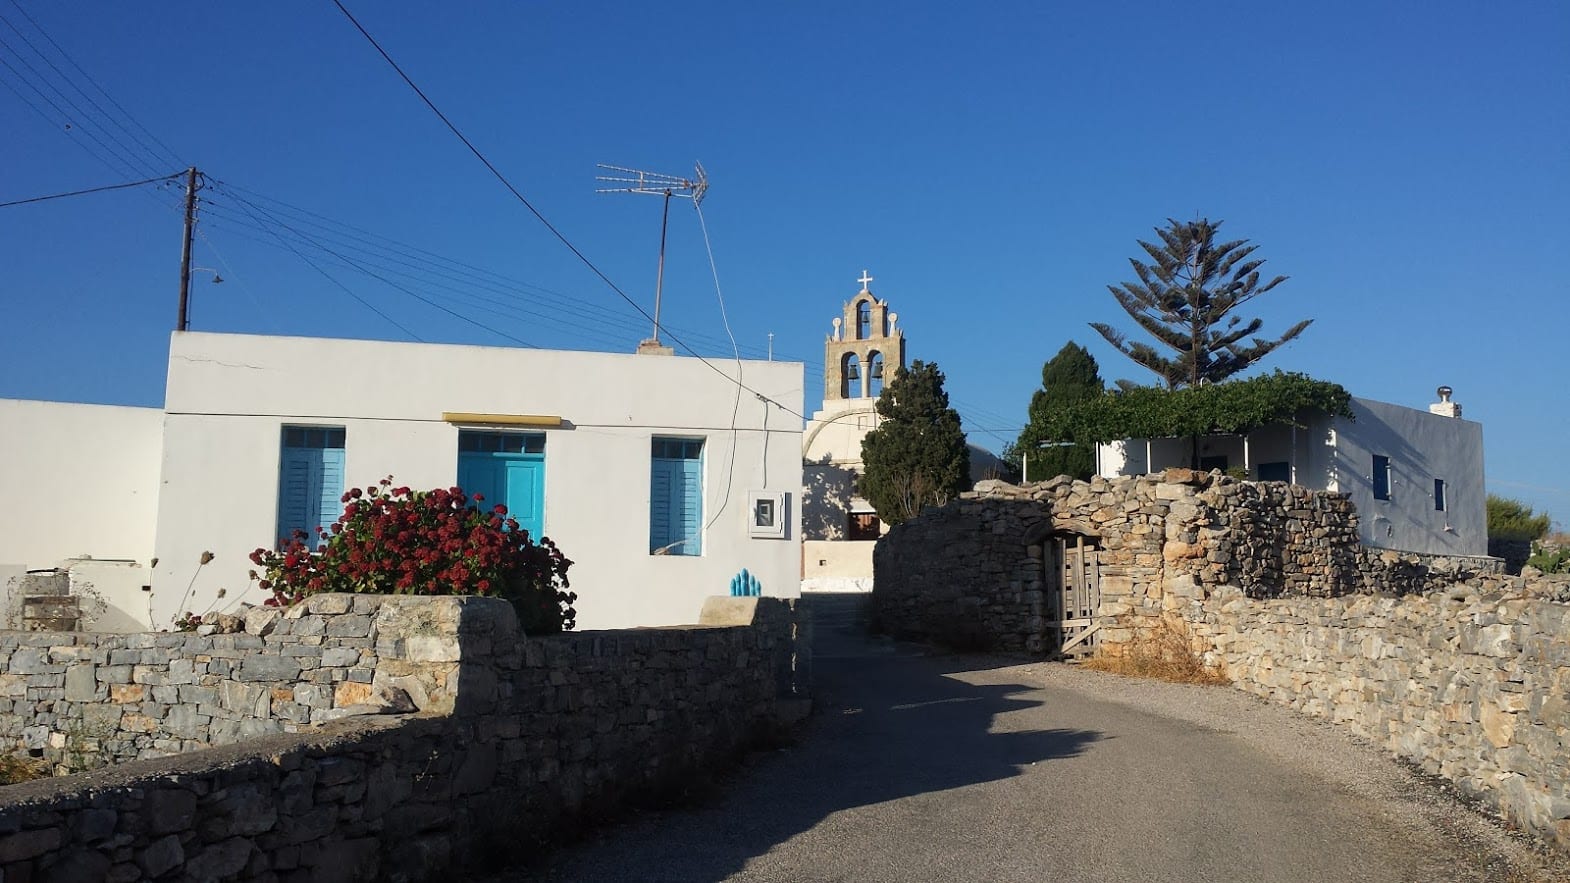 Схинусса Греция - тихий греческий остров для отдыха